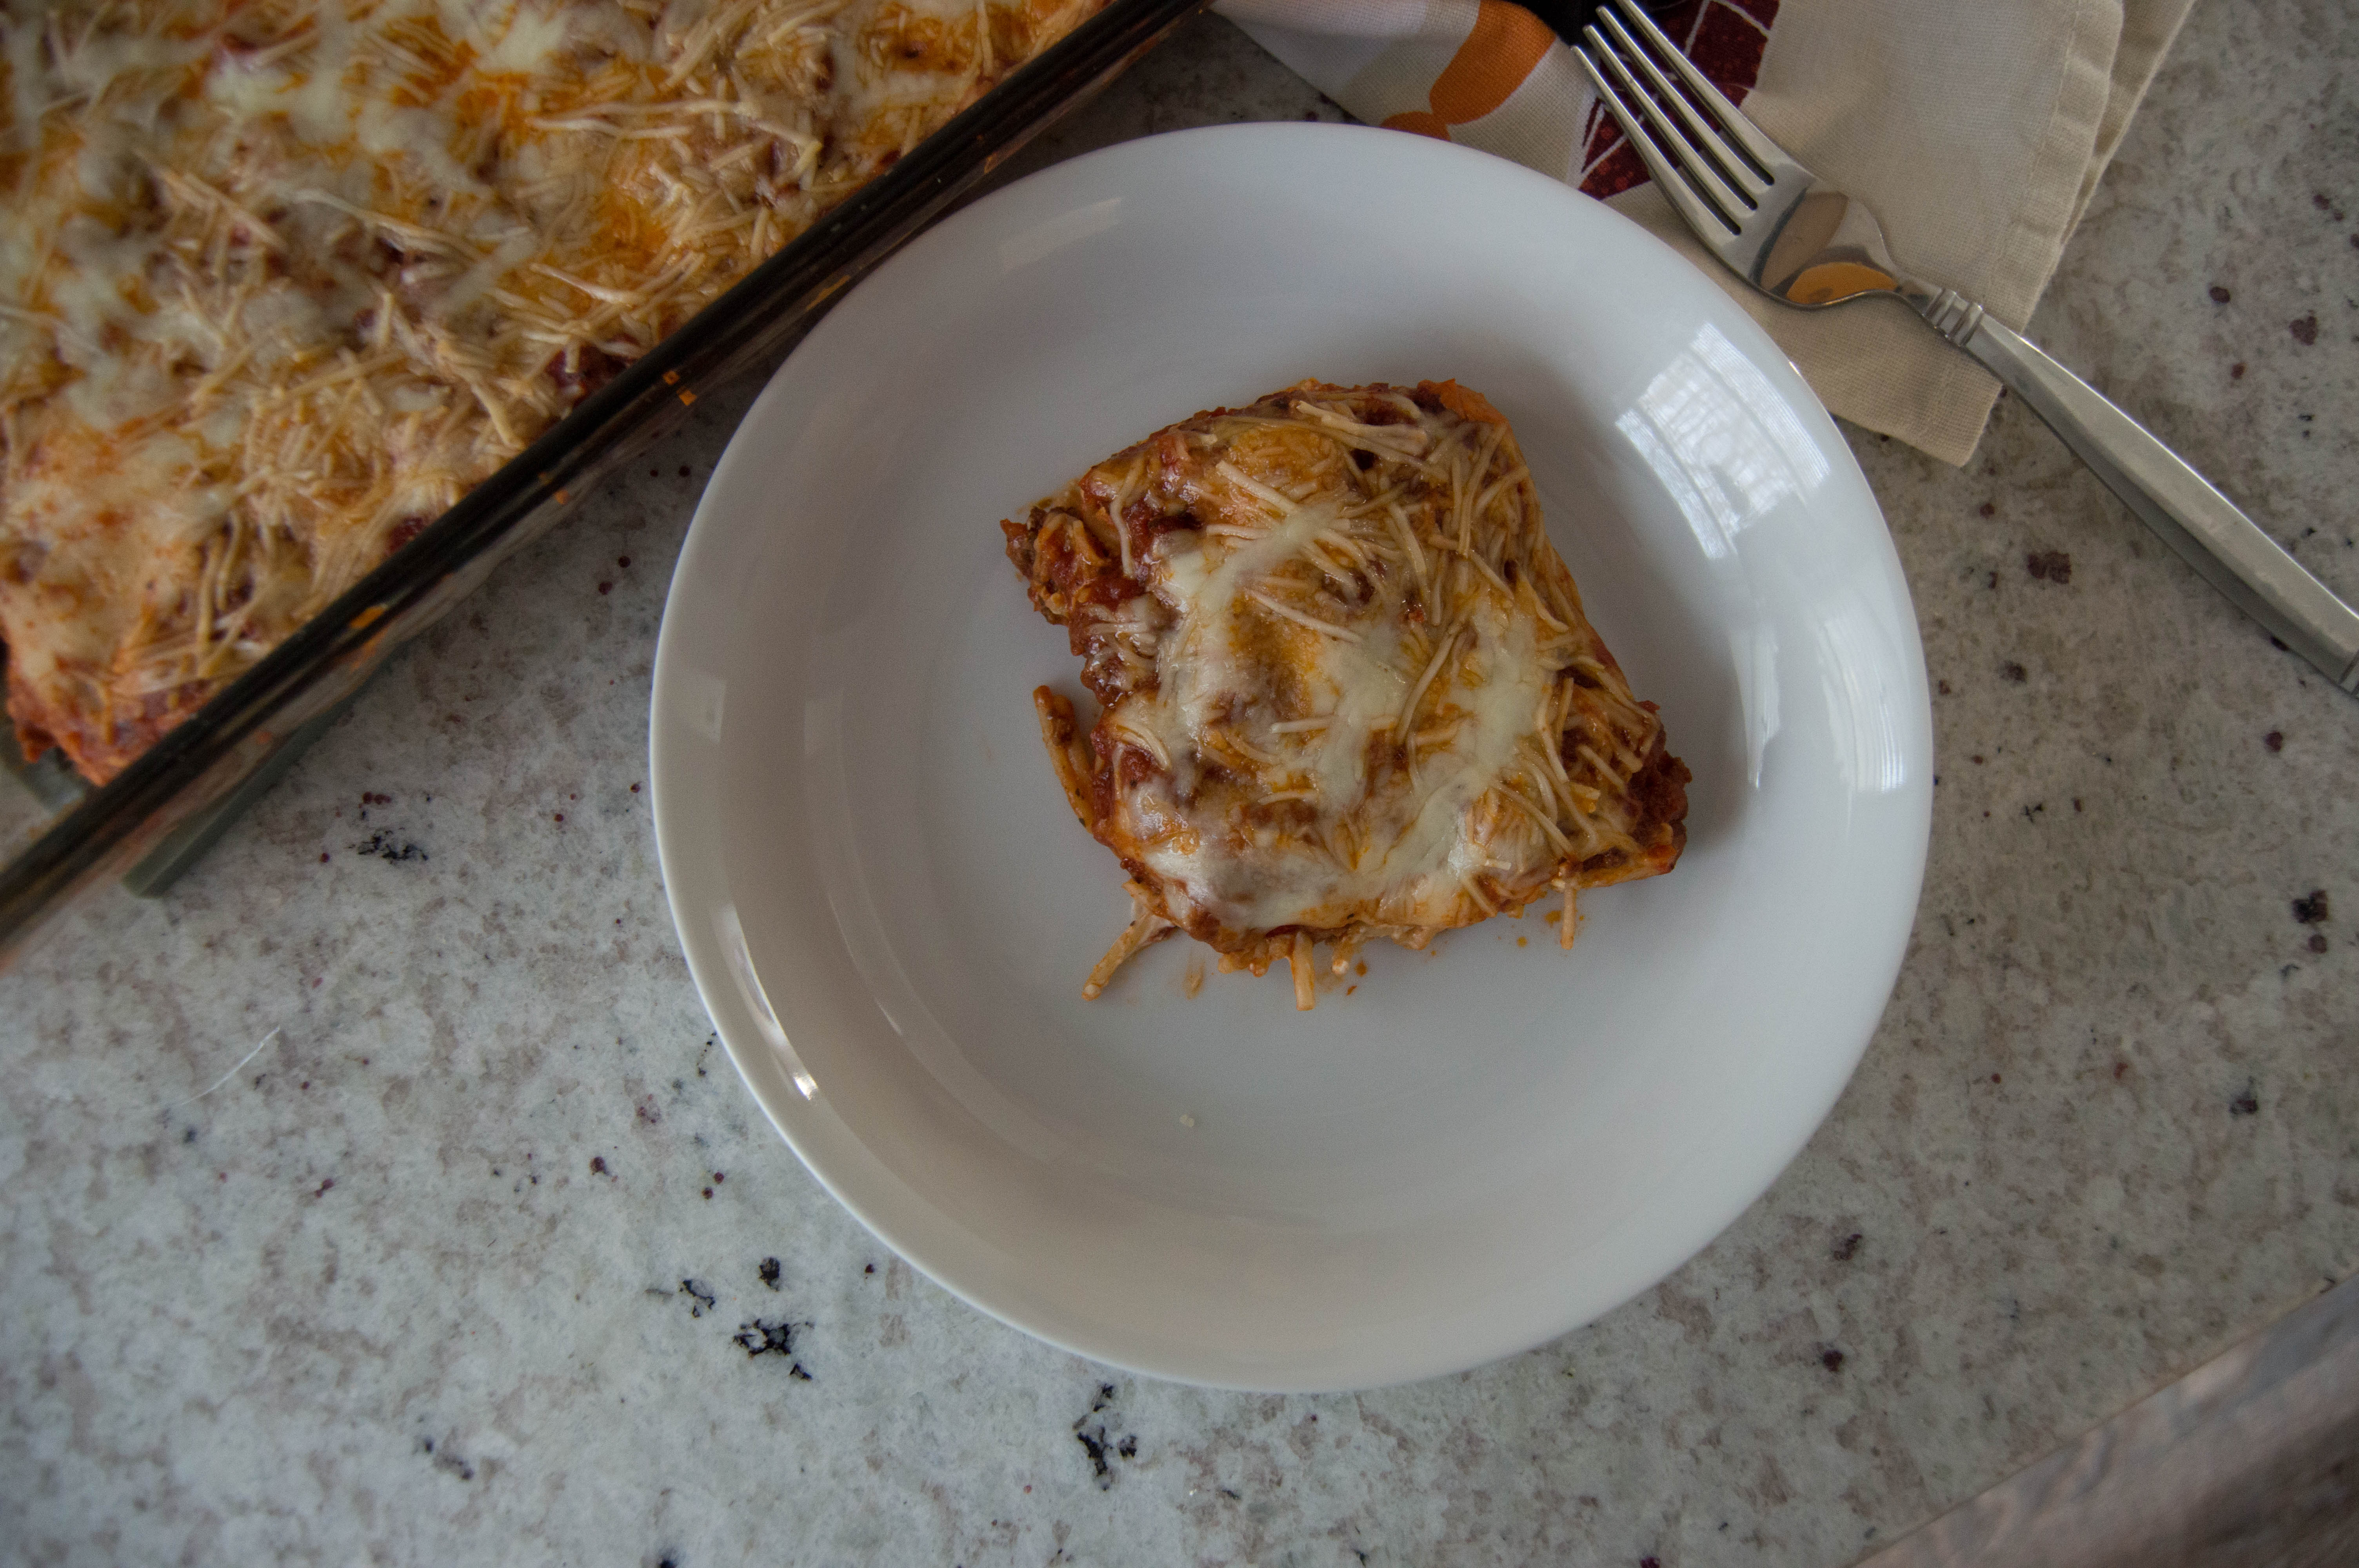 baked spaghetti recipe